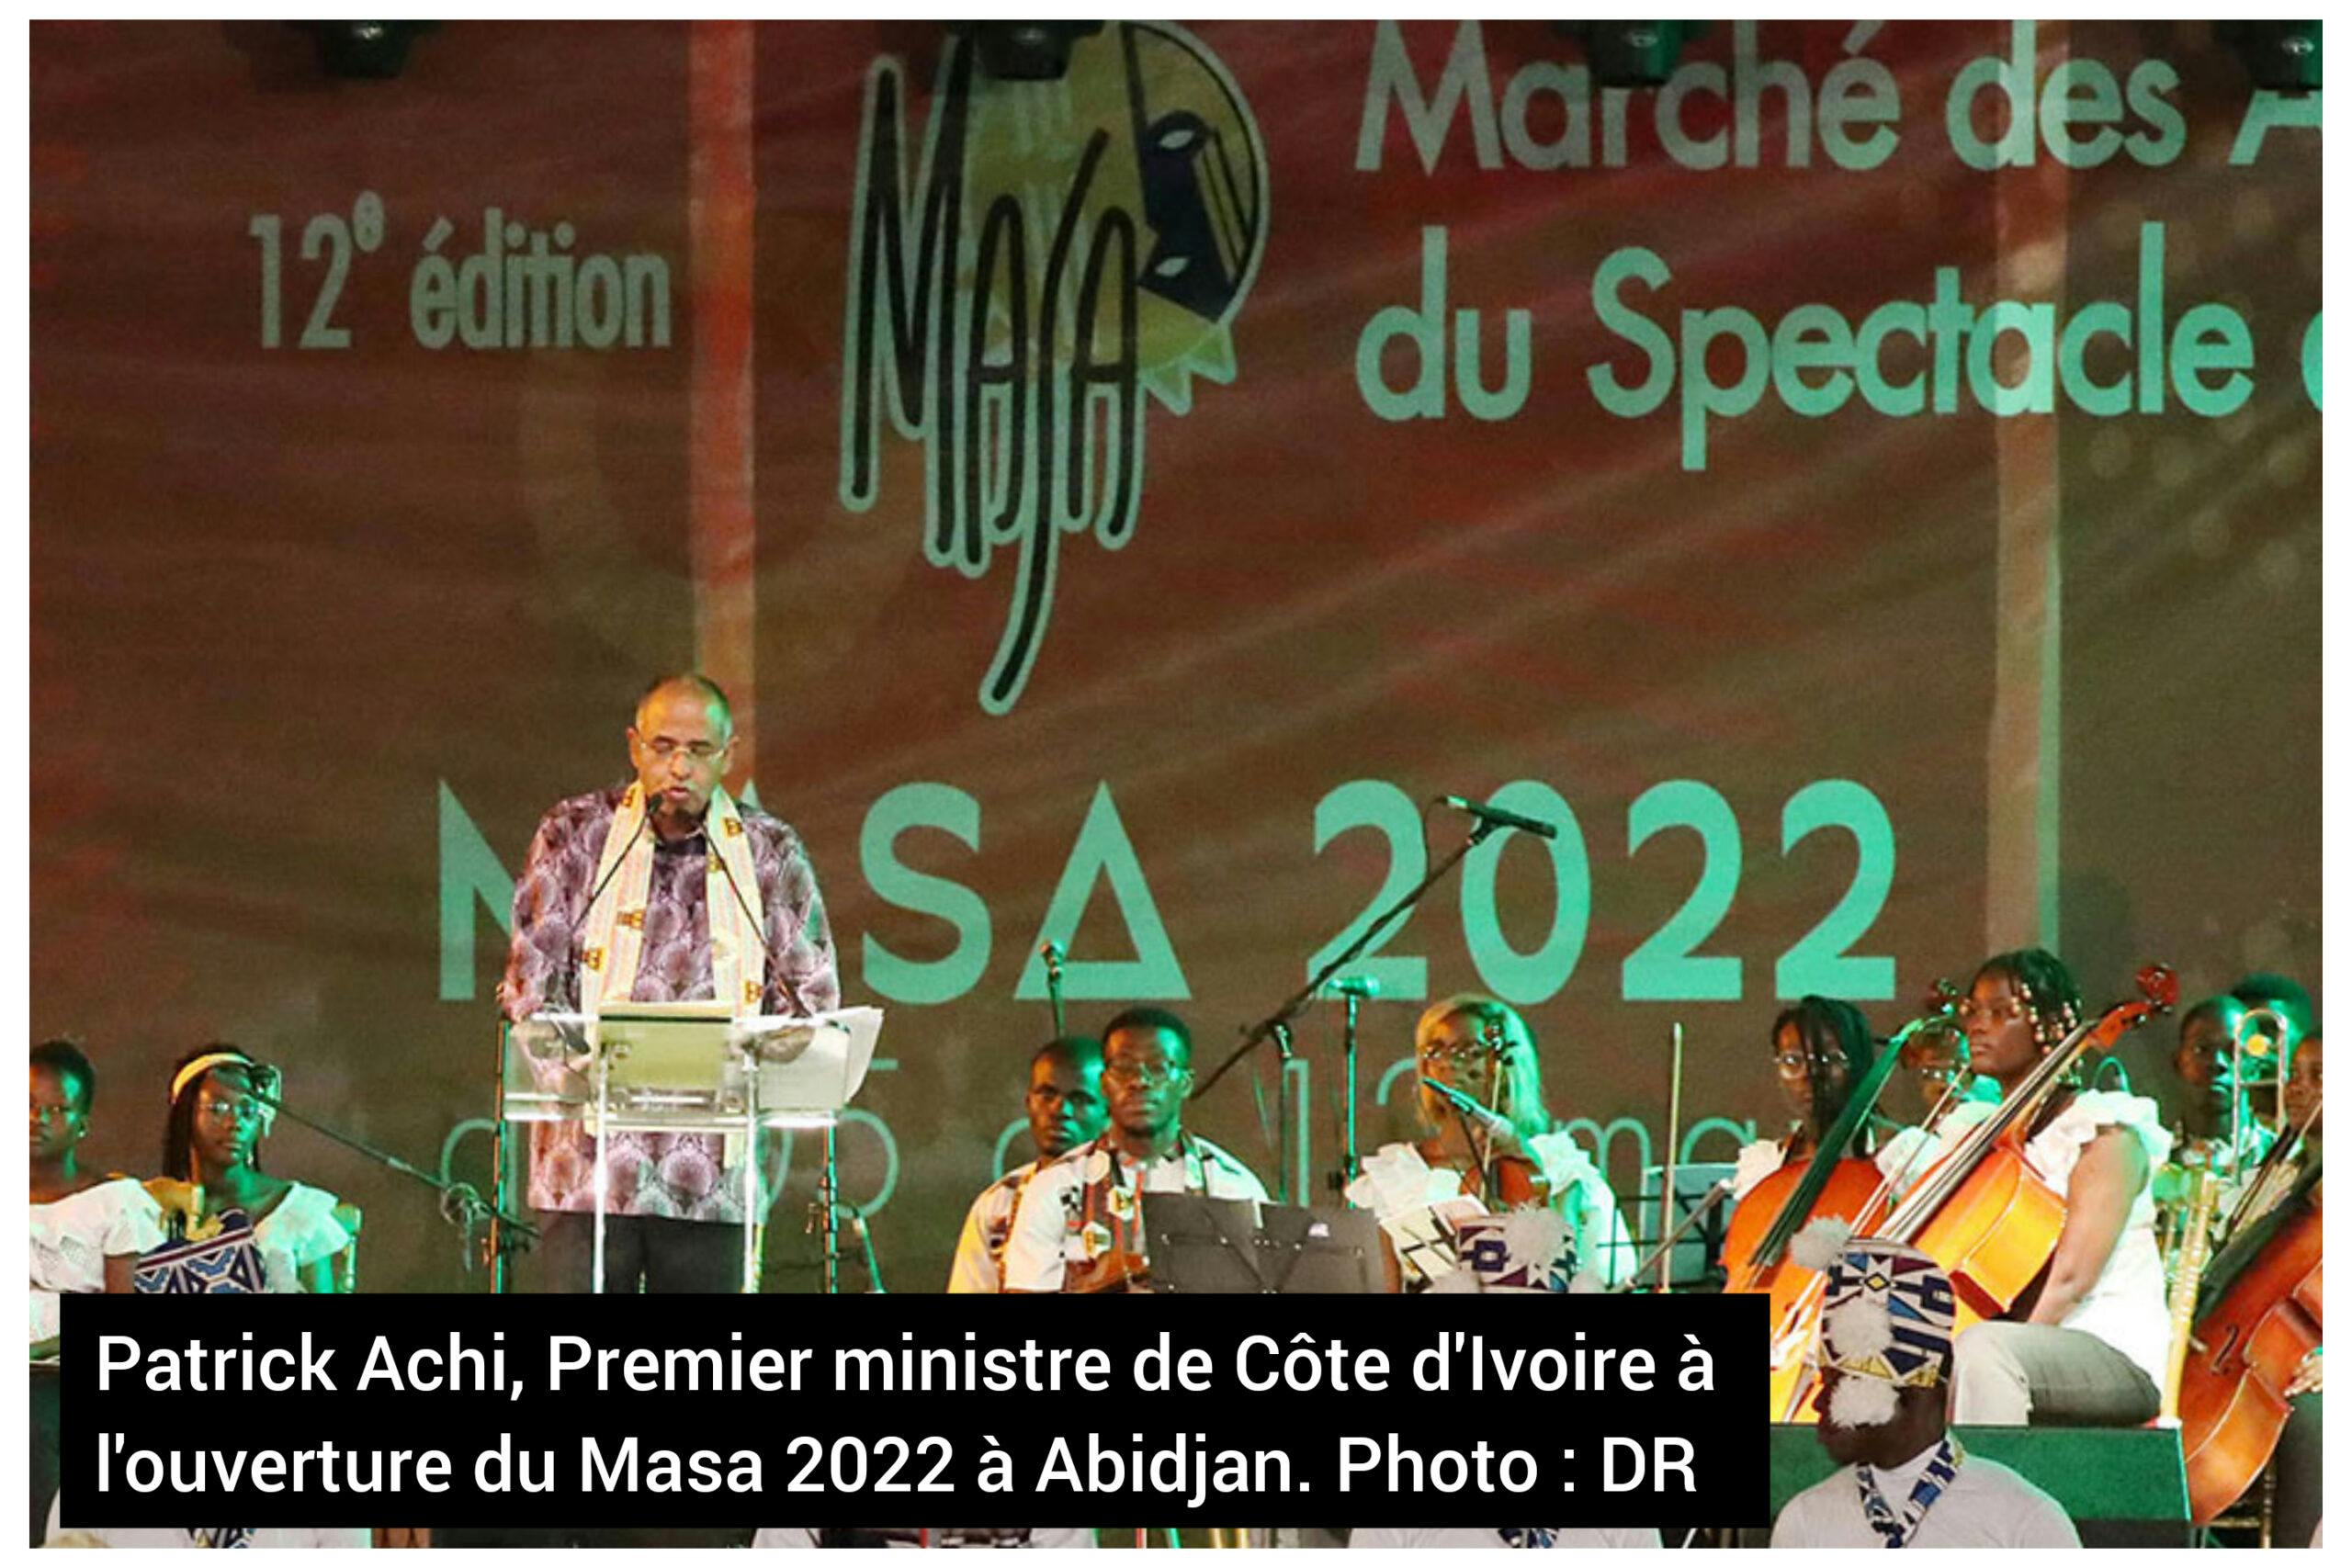 Côte d’Ivoire – Masa 2022 : Patrick Achi exhorte les artistes à s’inscrire dans l’innovation